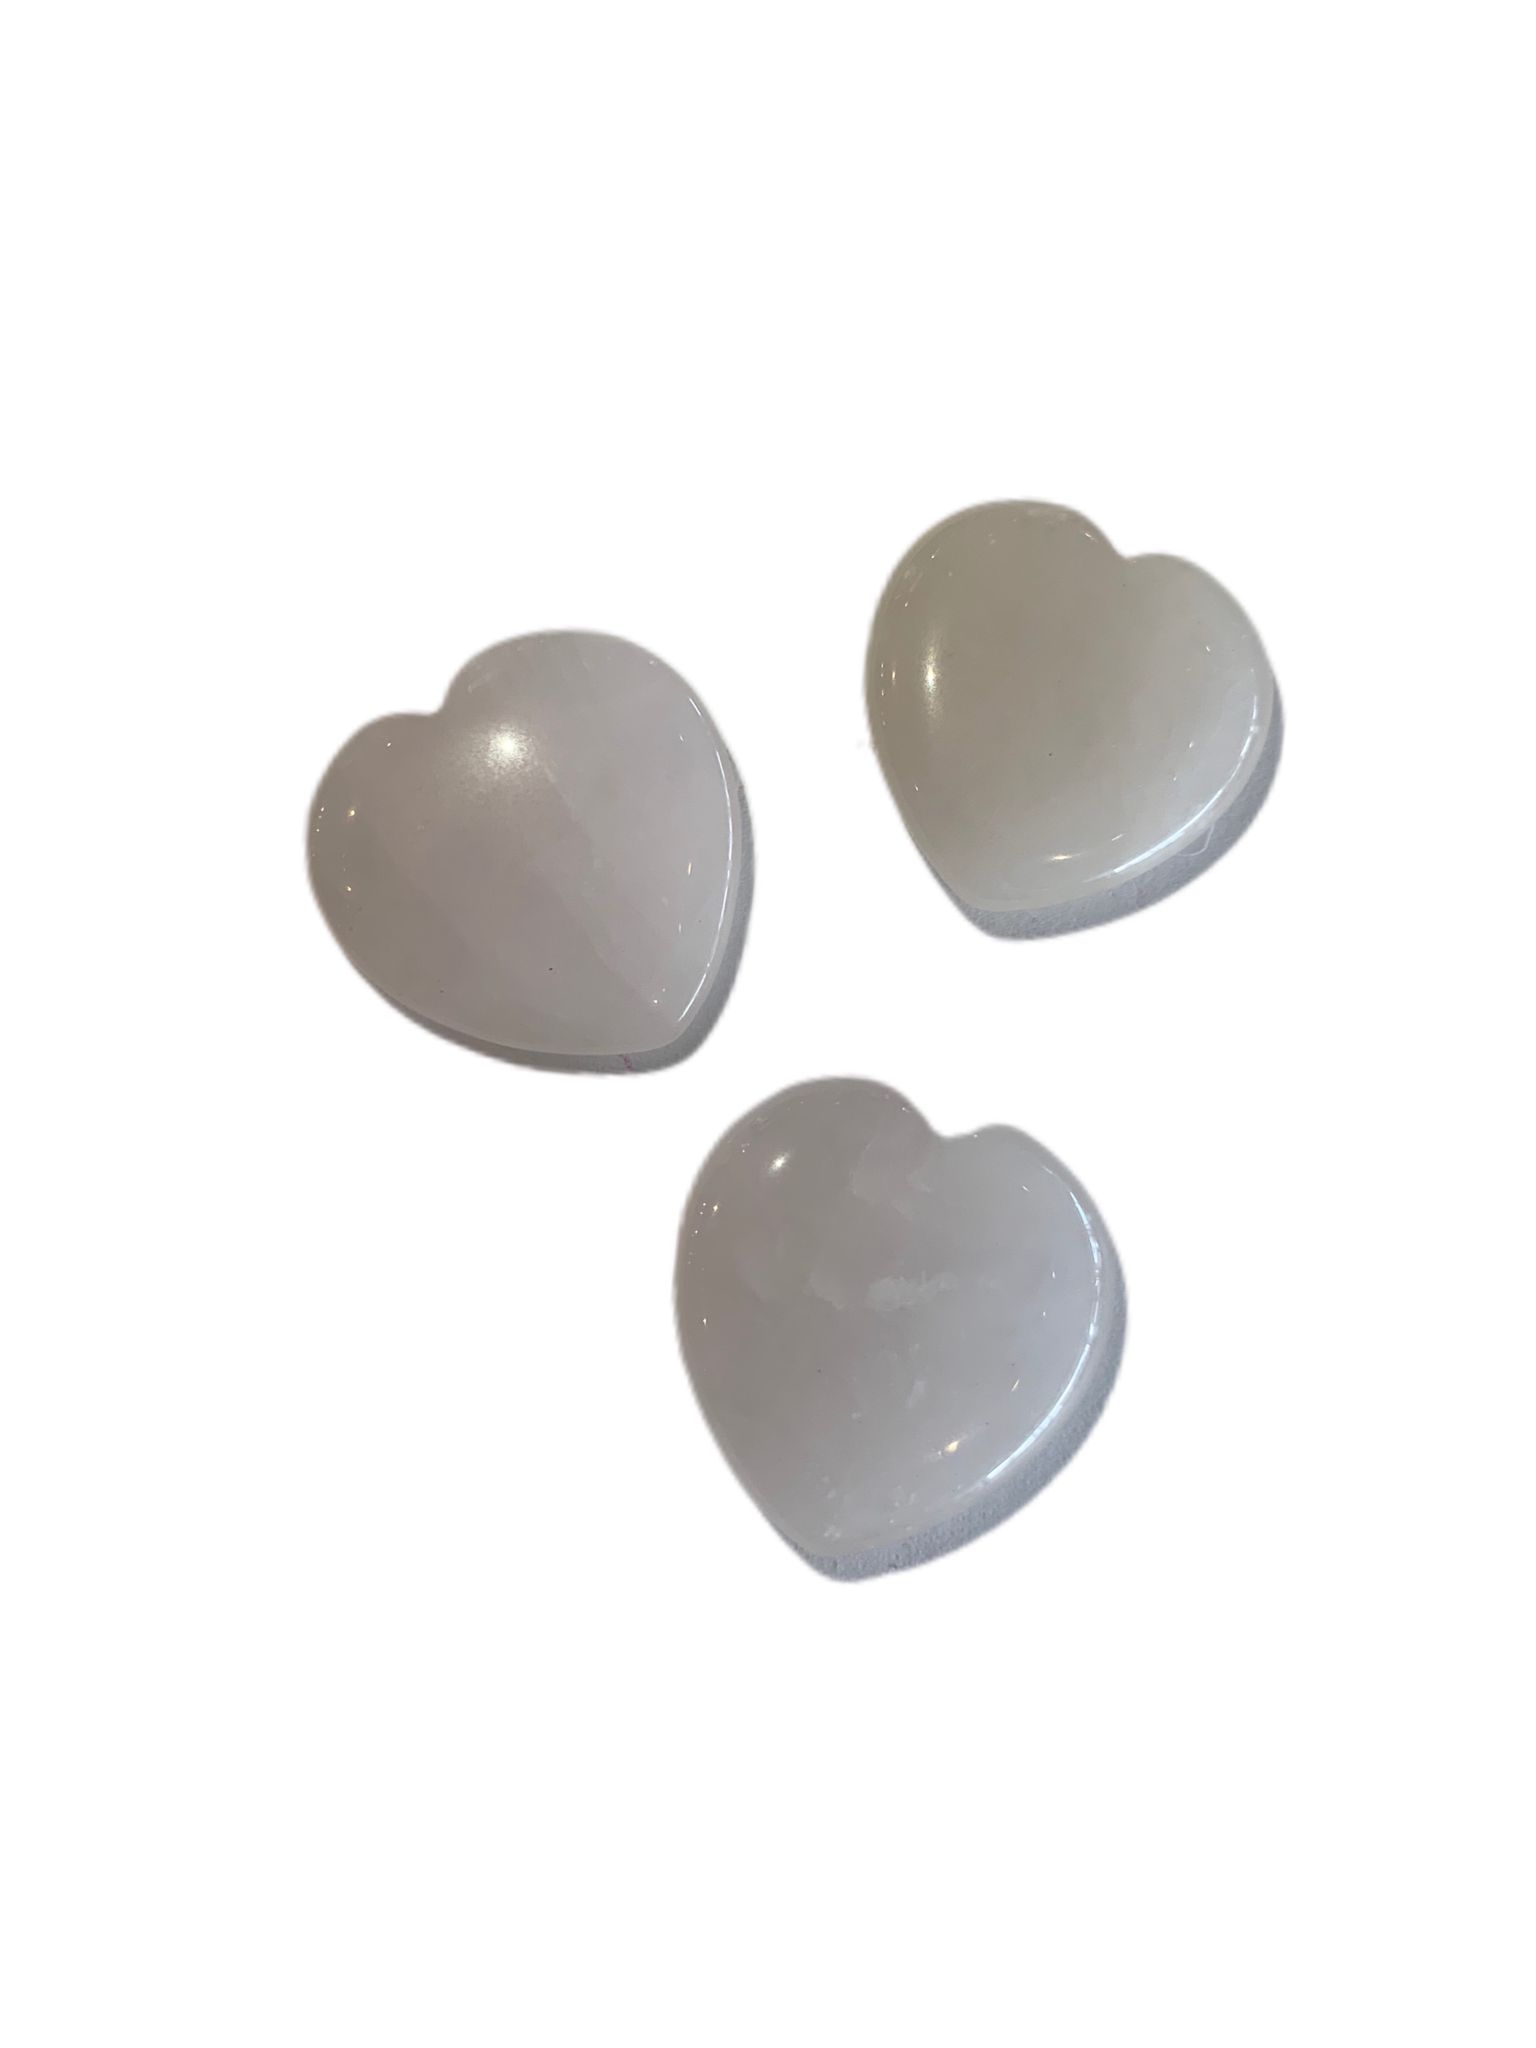 rose-quartz-heart-stones-set-of-20